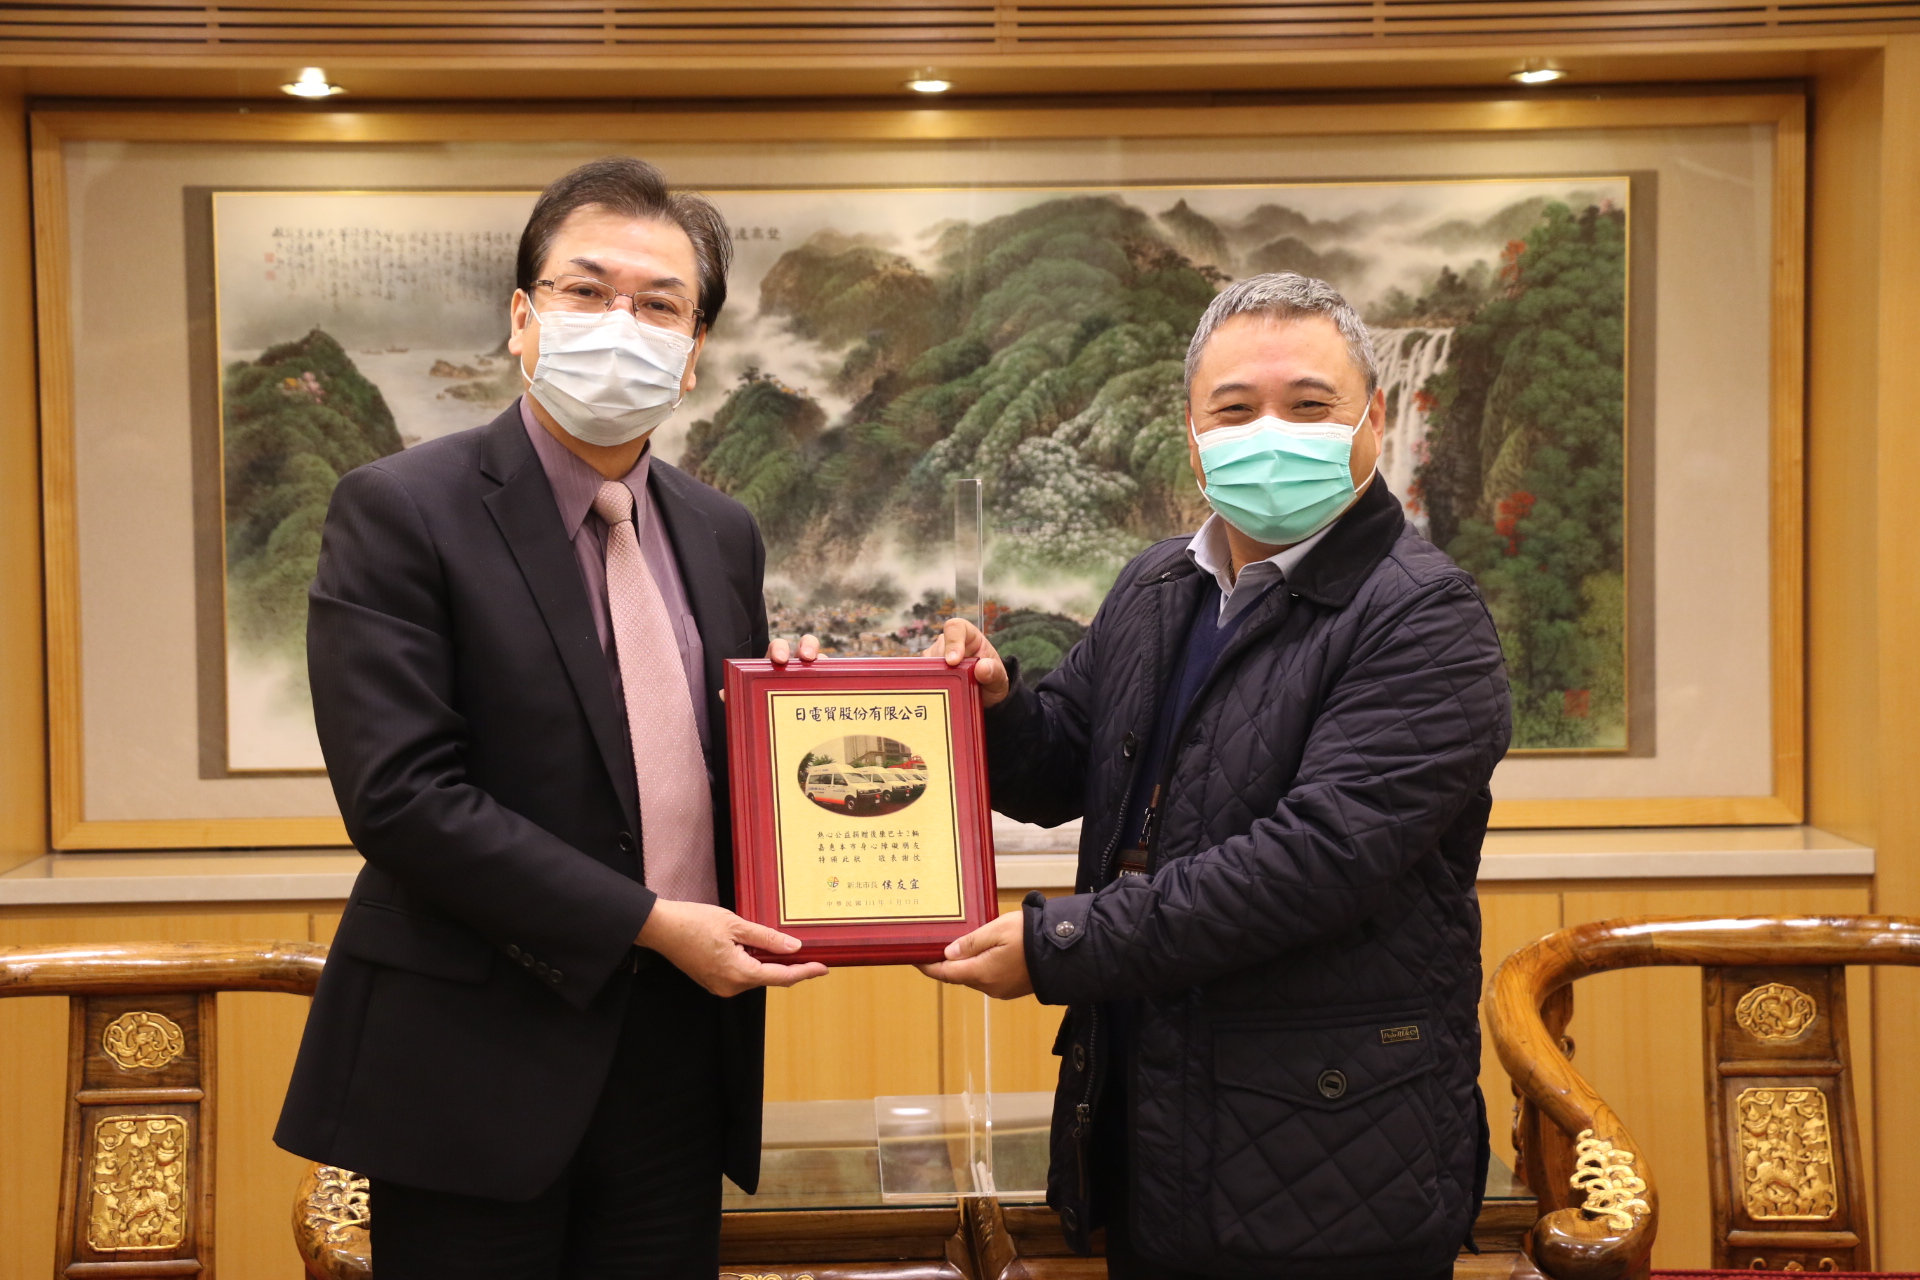 劉和然代表侯友宜市長頒贈感謝牌給日電貿公司副董事長李坤蒼（右）